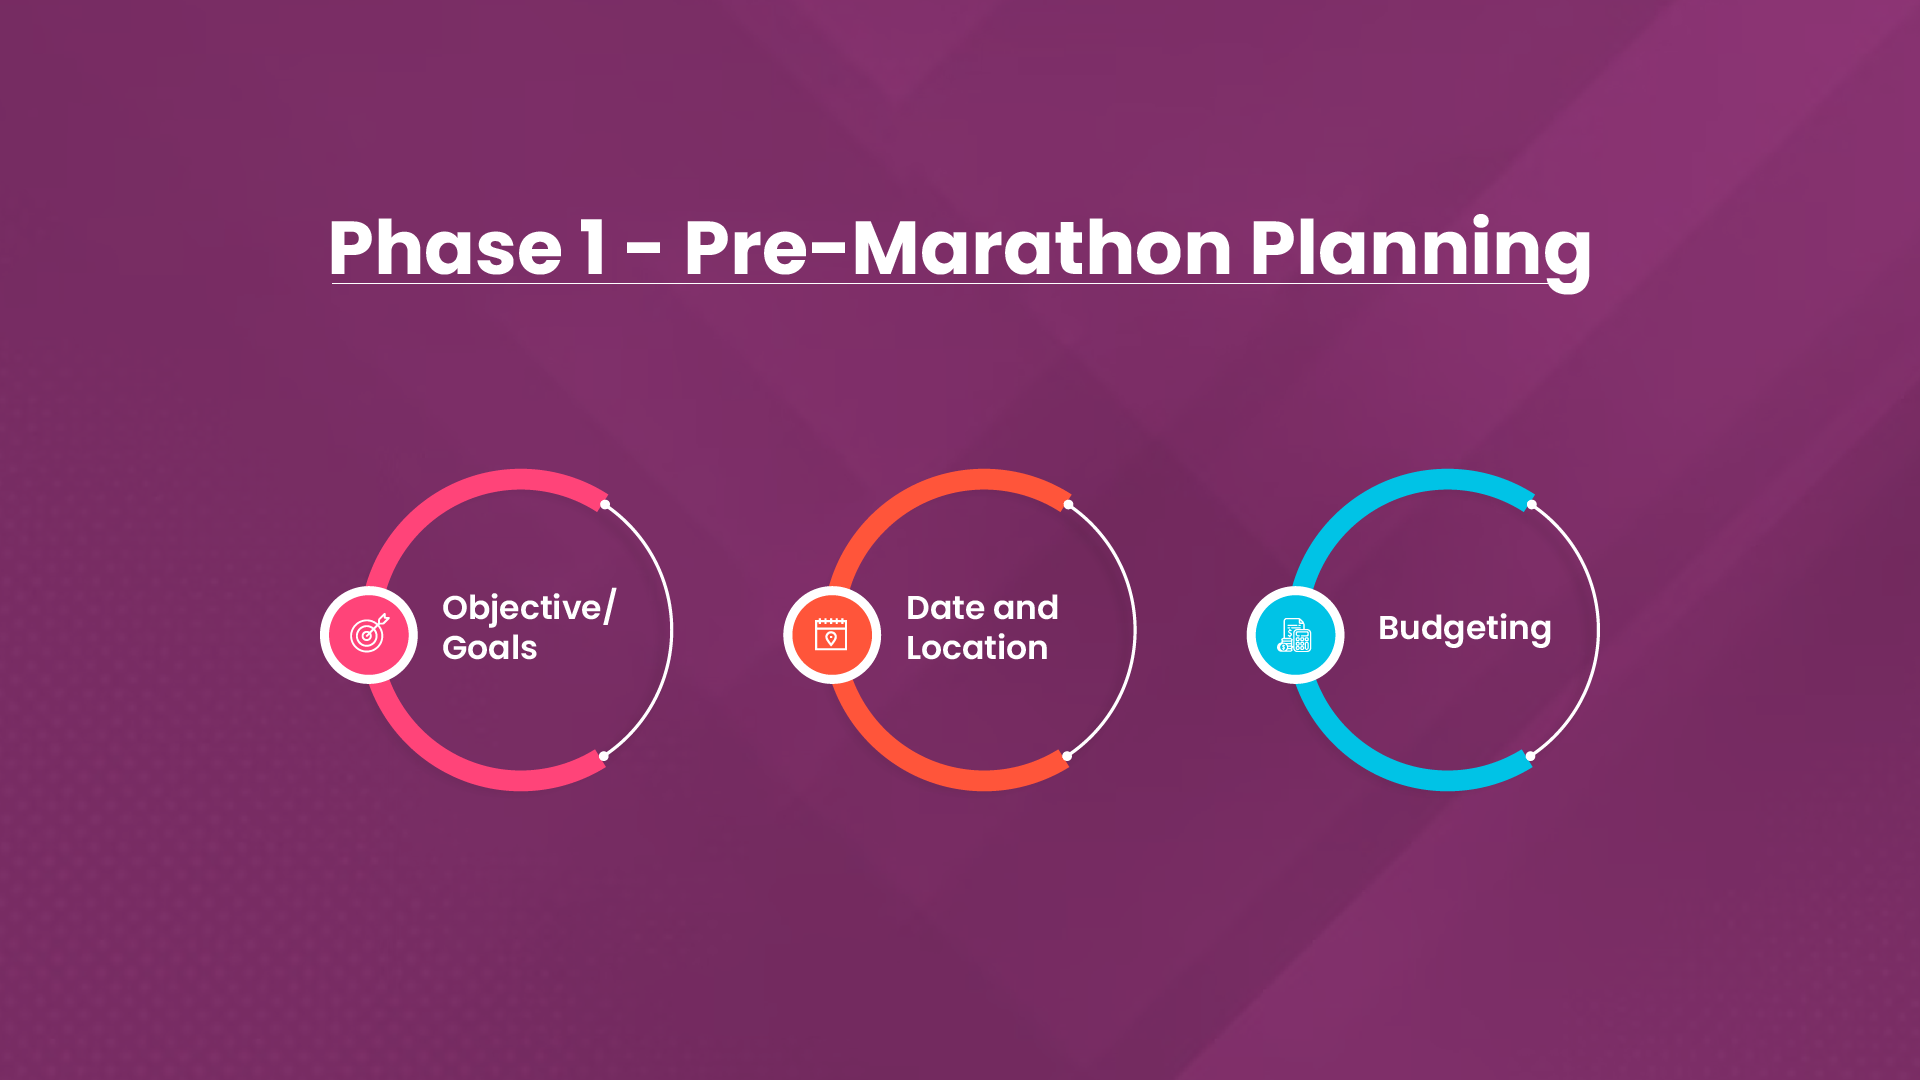 Phase 1: Pre-Marathon Planning